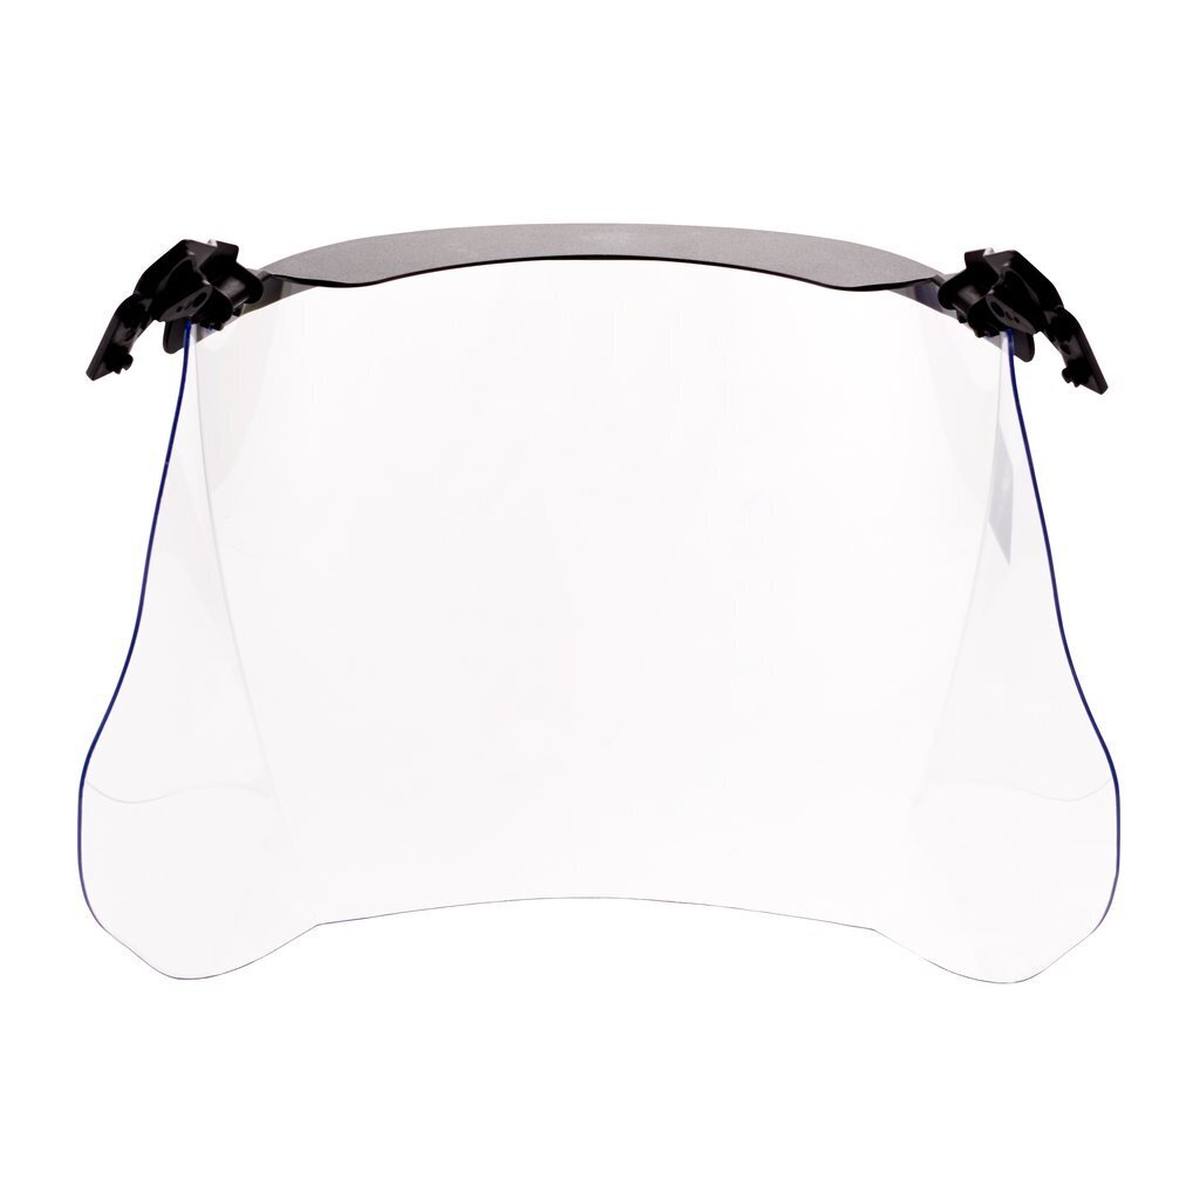 visiera trasparente 3M V4KK in policarbonato con schermo parasole corto estremamente resistente agli urti e ai graffi Spessore: 1,5 mm, peso: 180g (incluso il supporto per il casco)